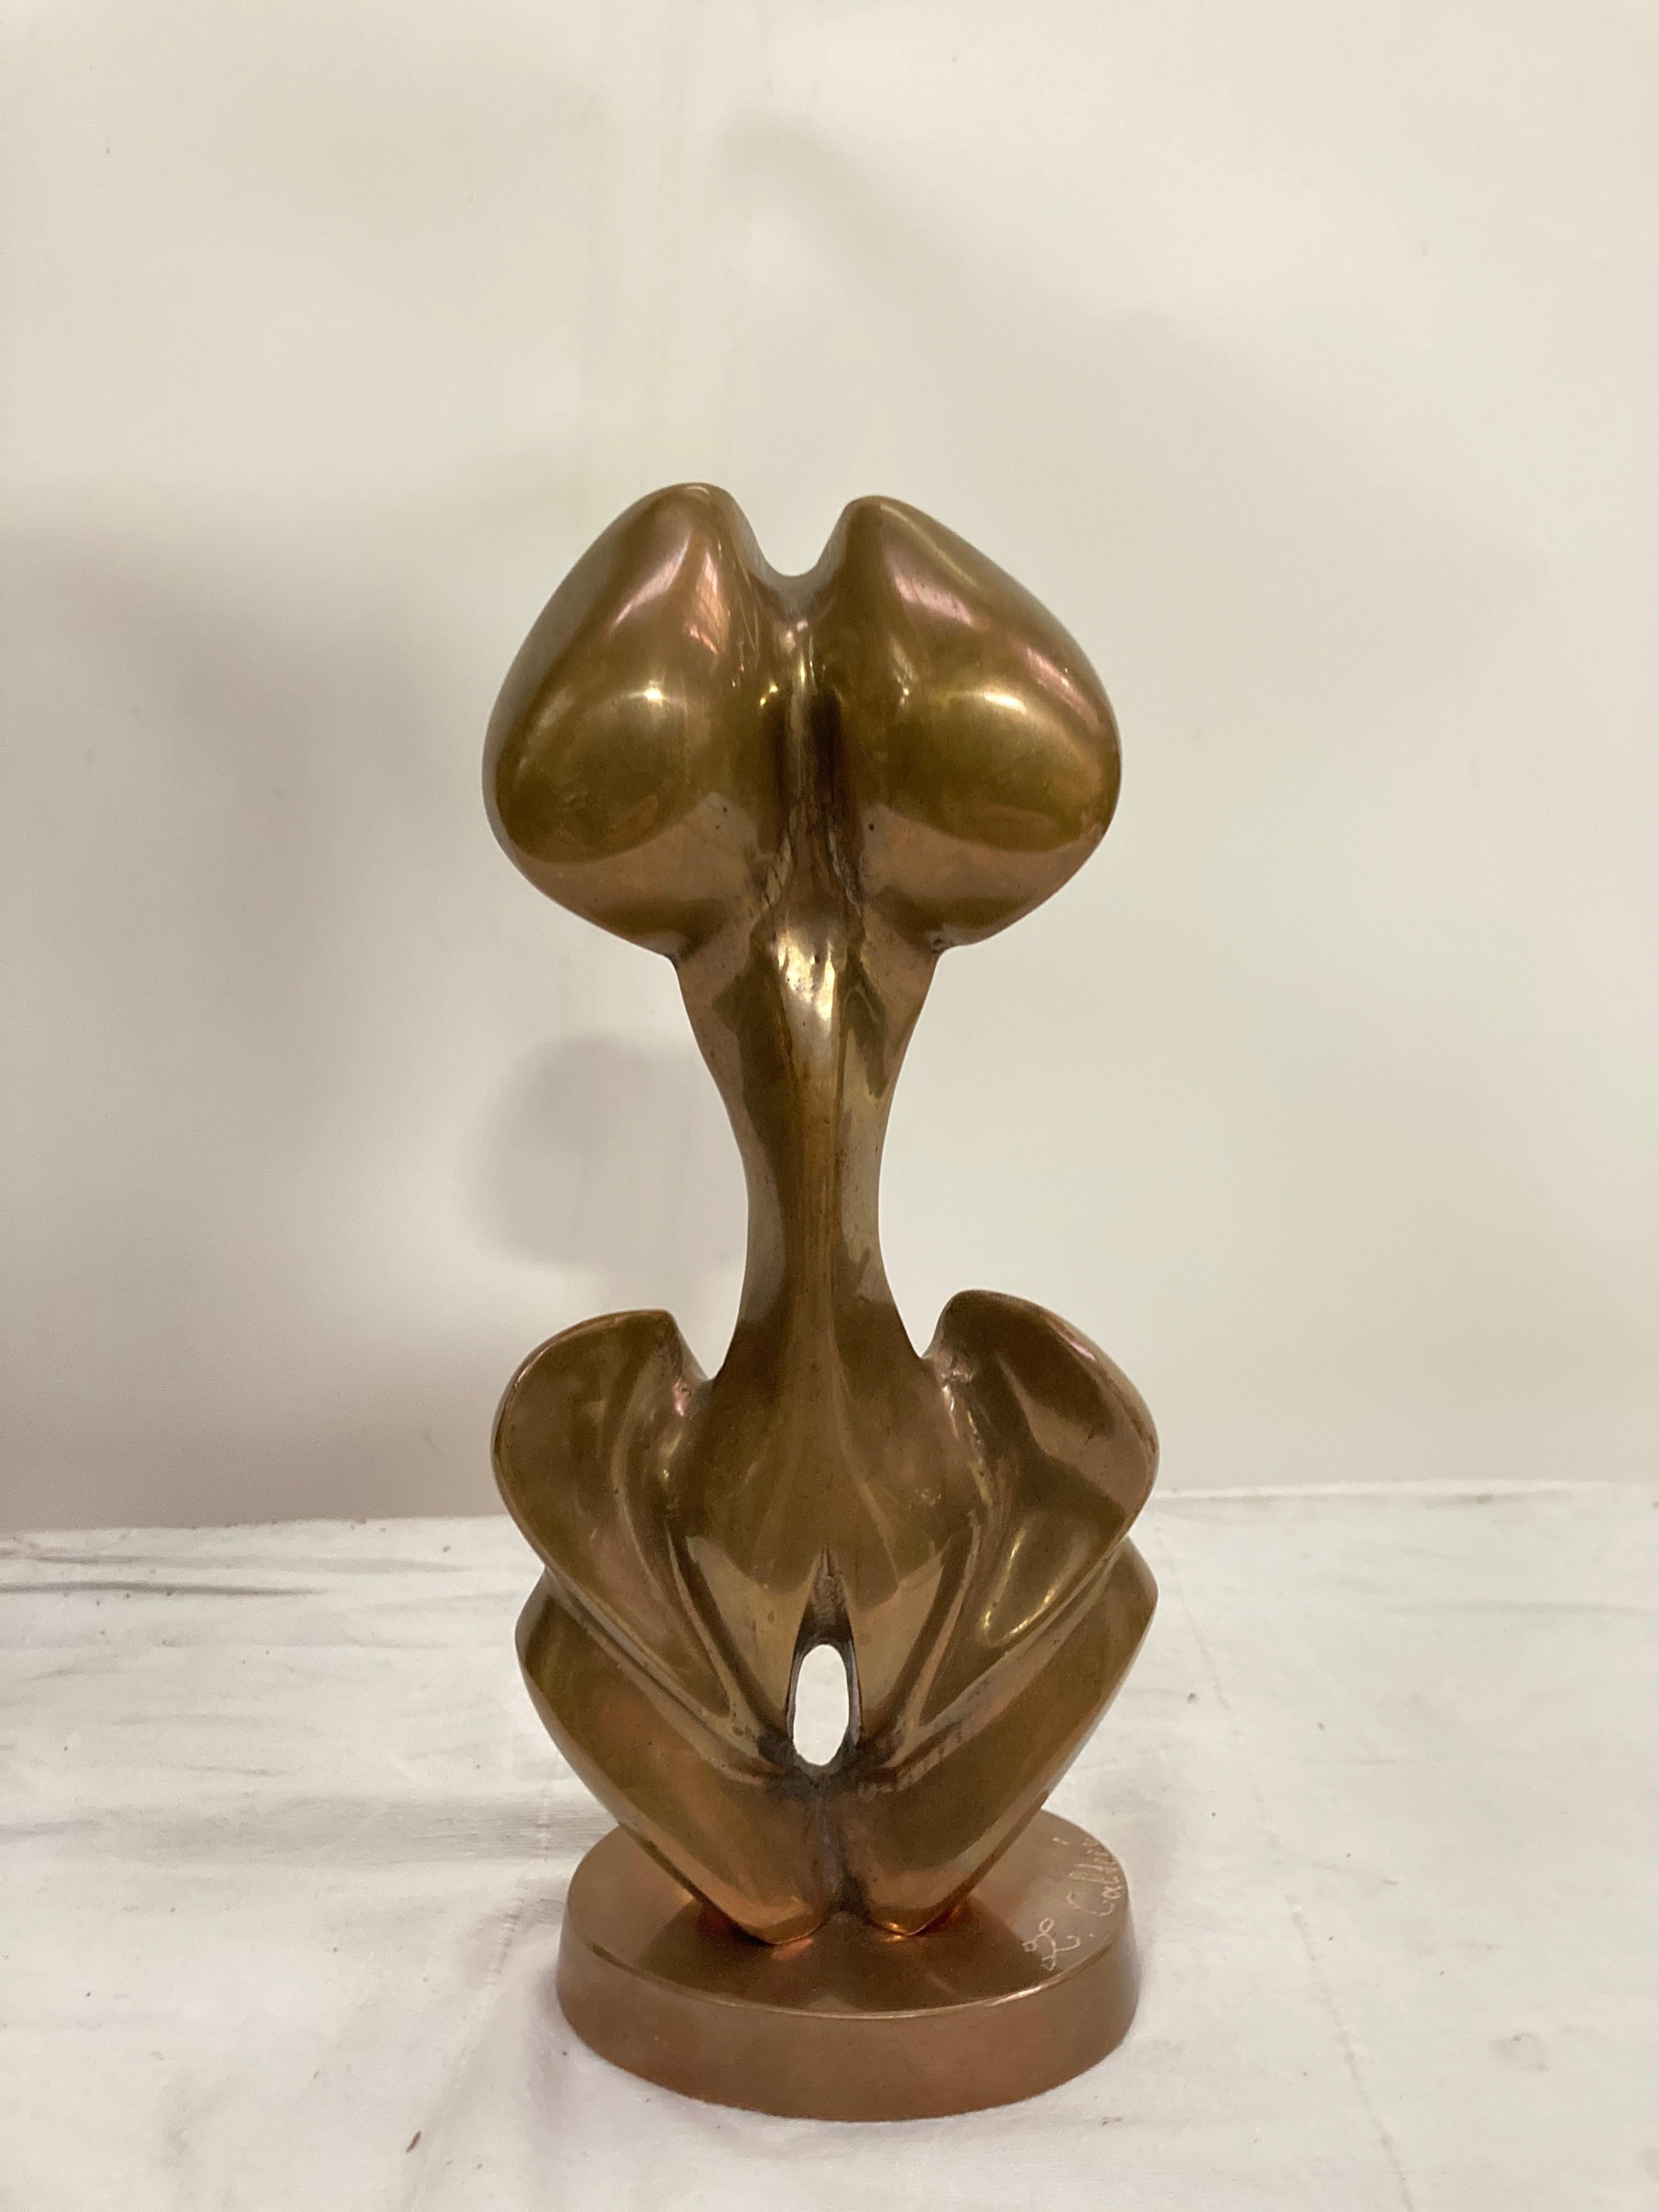 Bronze érotique des années 1970 montrant les deux sexes 
Signé L Calderi.
Artistics Belgique